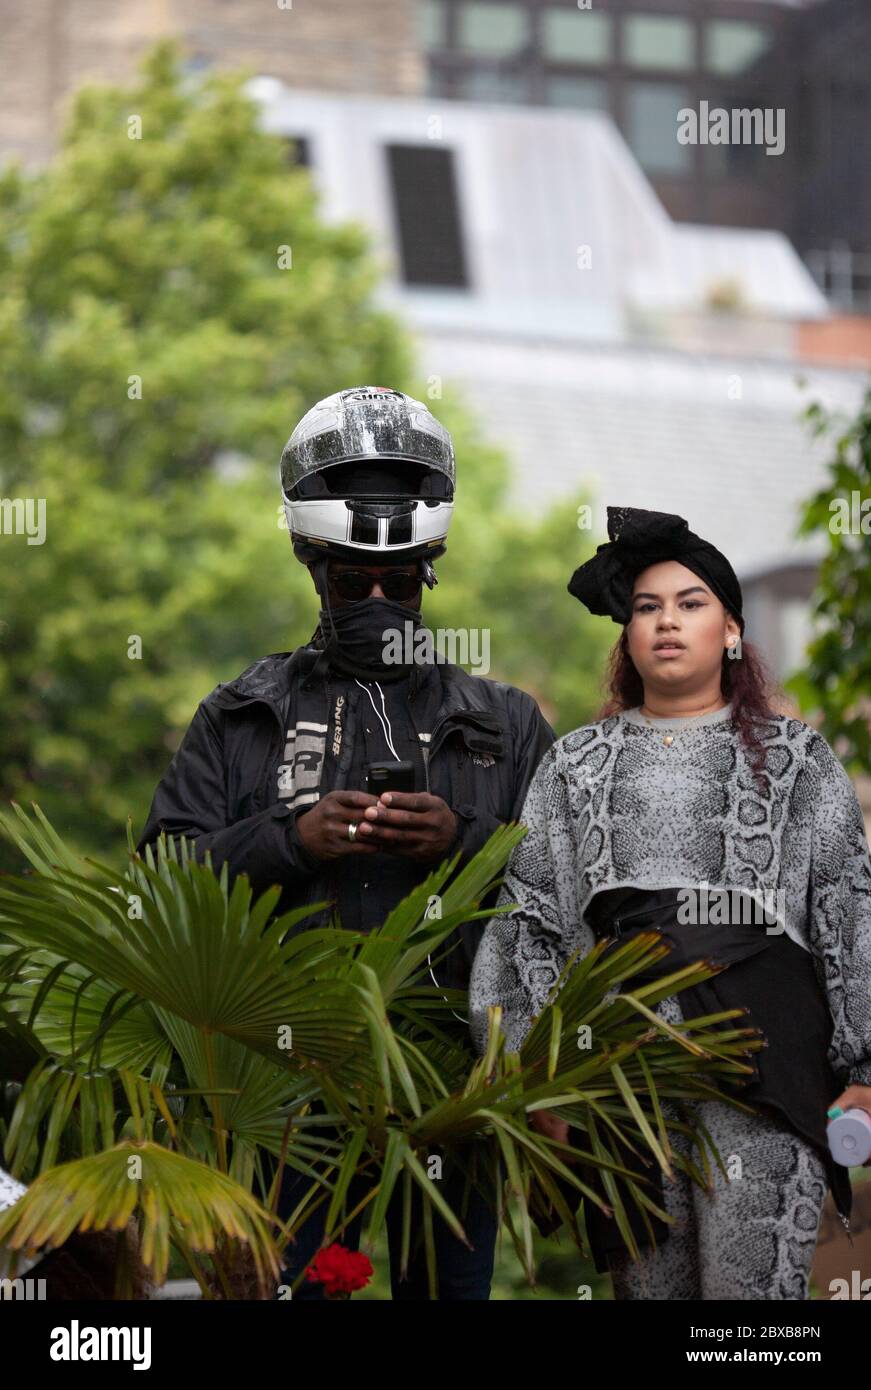 Mann, der einen Helm trägt und ein Handy benutzt, steht neben einer Frau beim Protest der Black Lives Matter UK, Parliament Square, London, England, UK Stockfoto